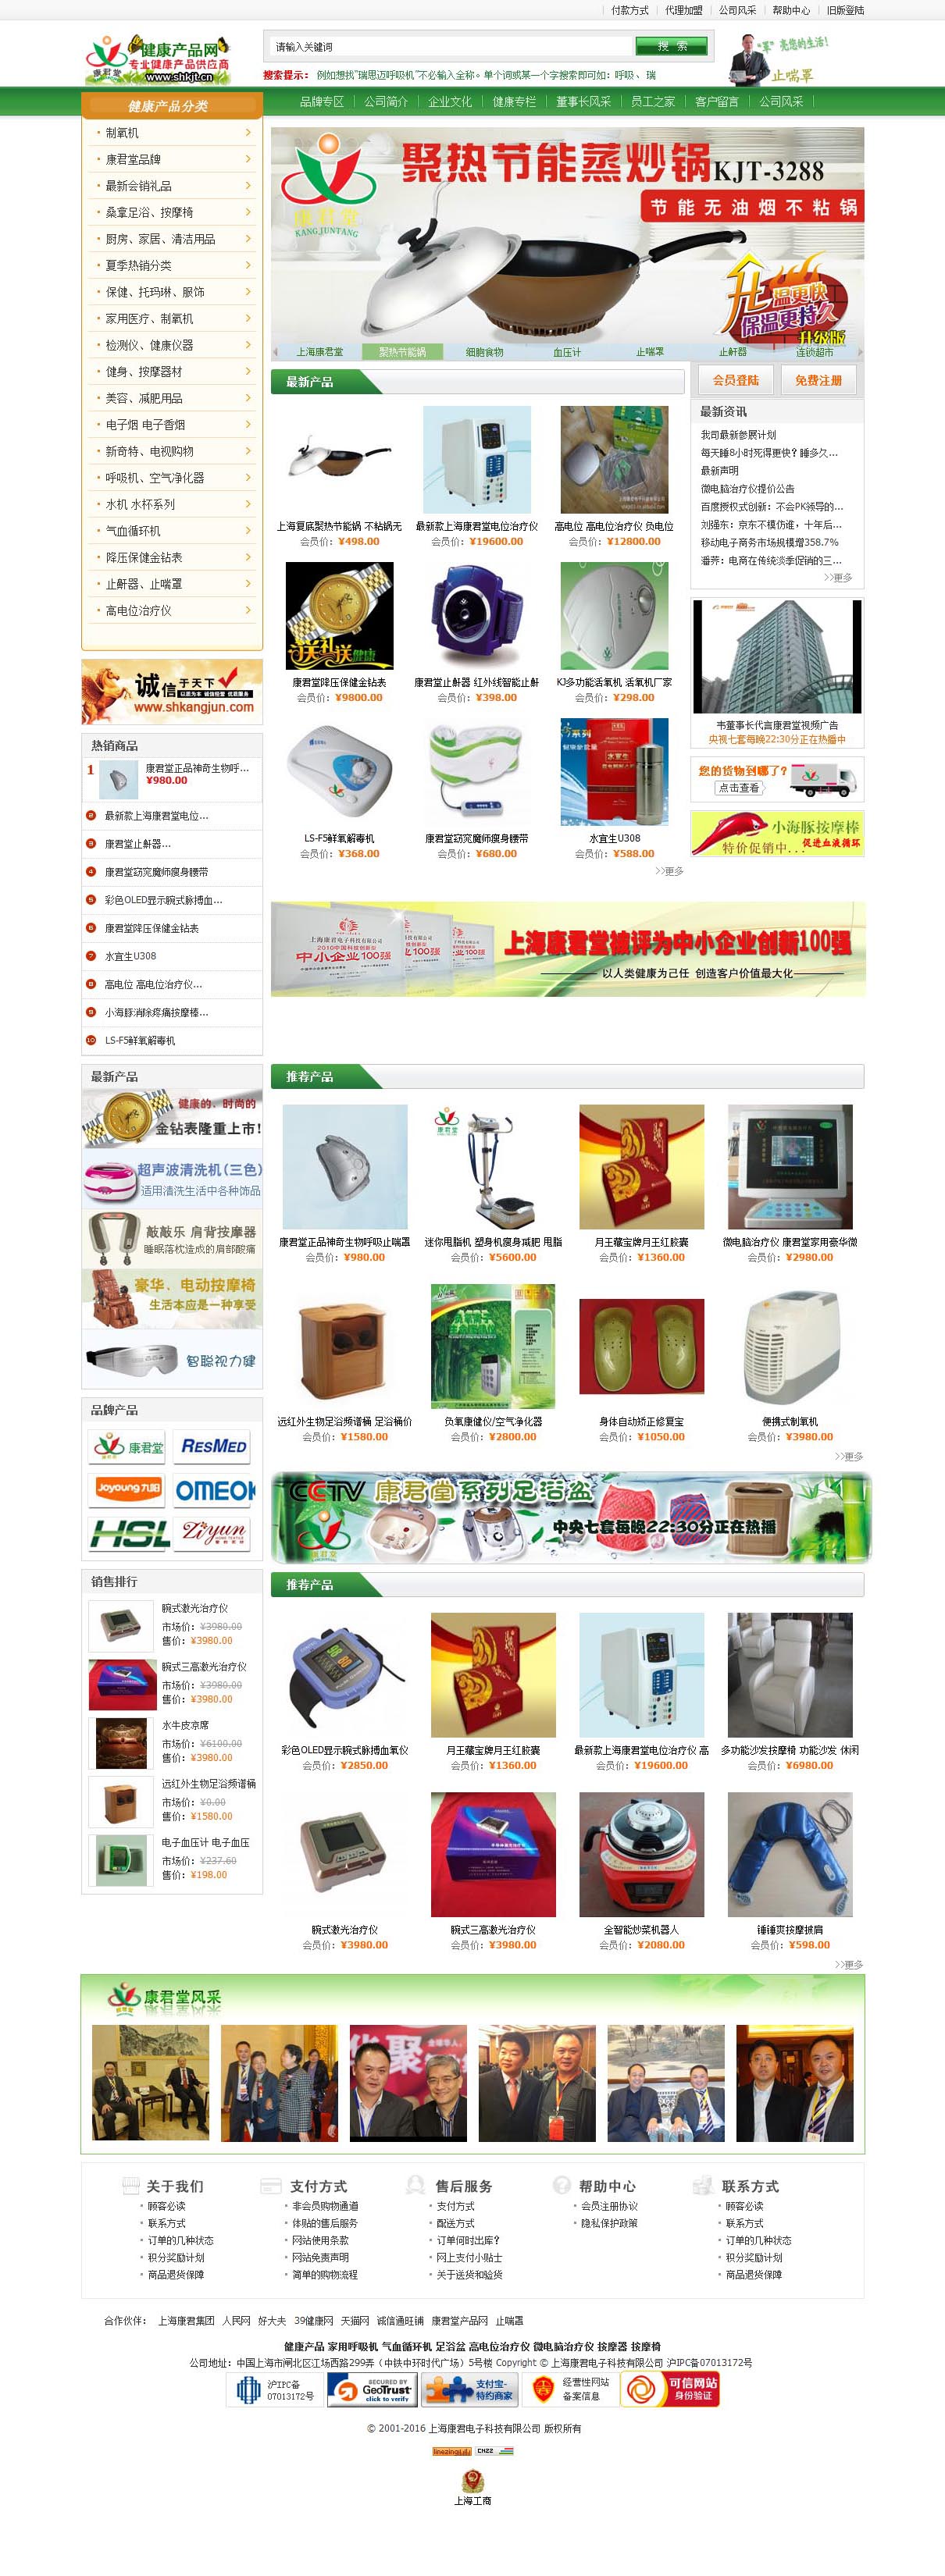 上海康君电子科技有限公司-康君堂品牌网站